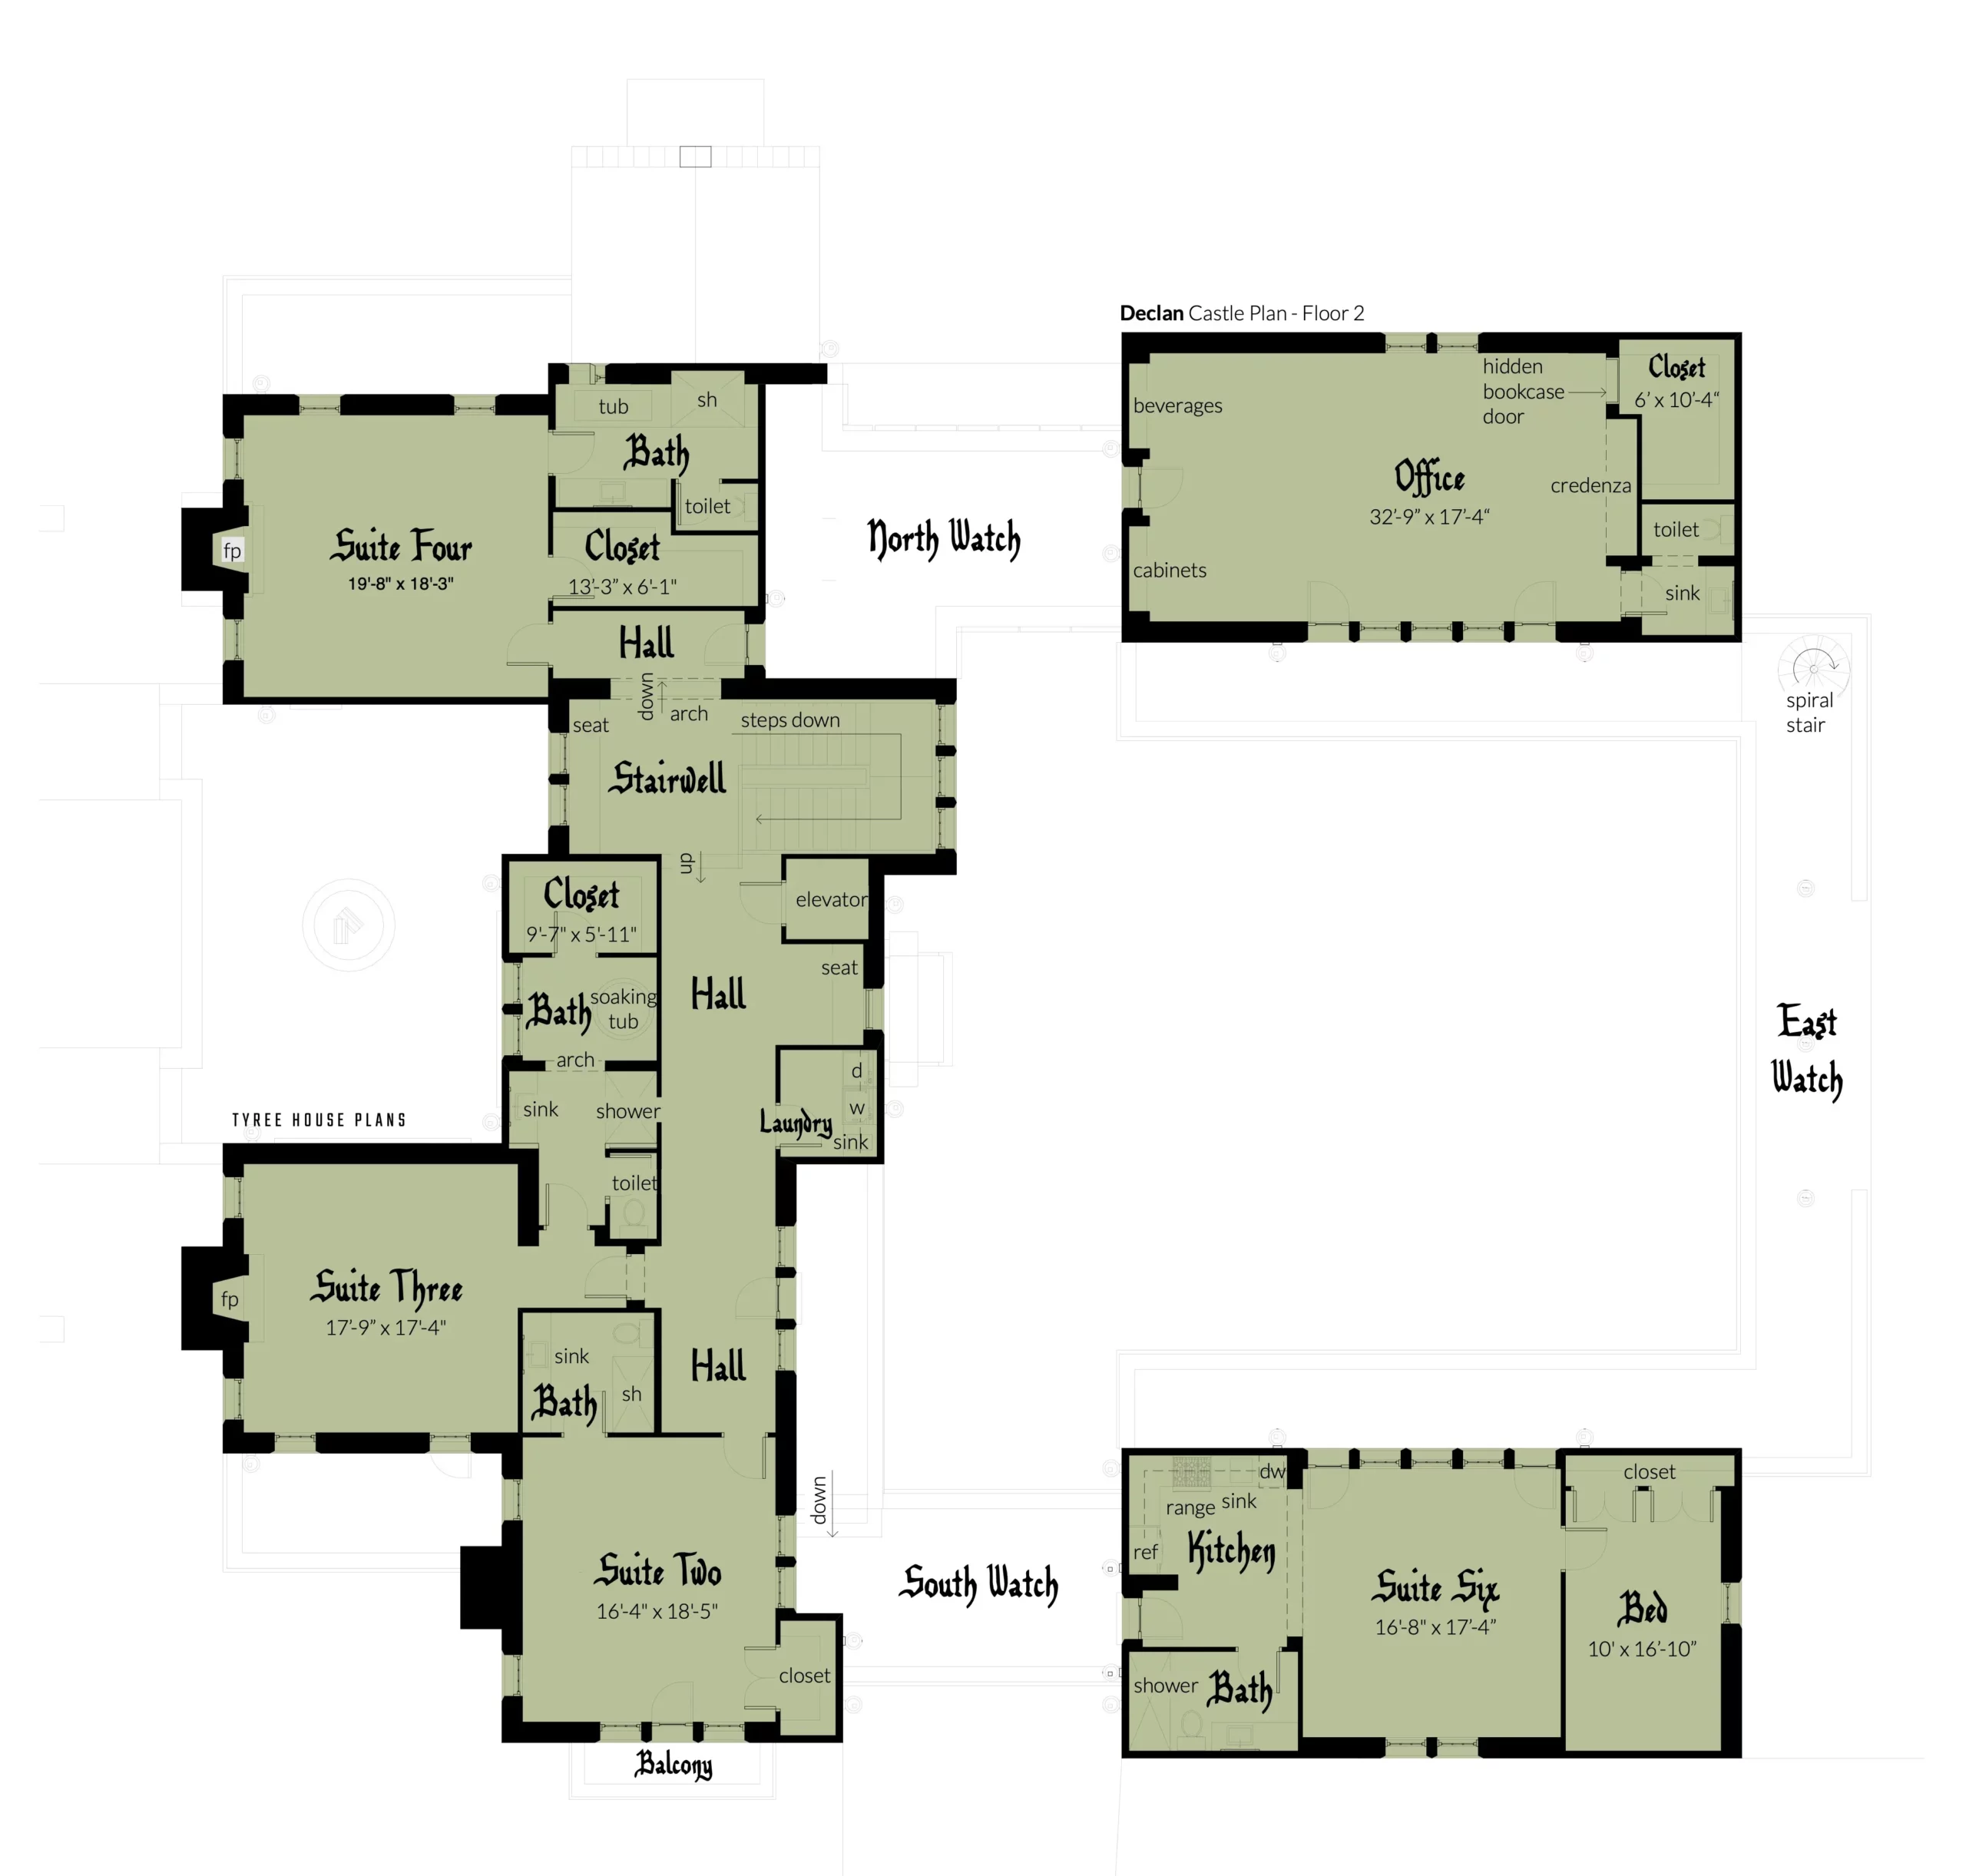 Floor 2 - Declan Castle Plan